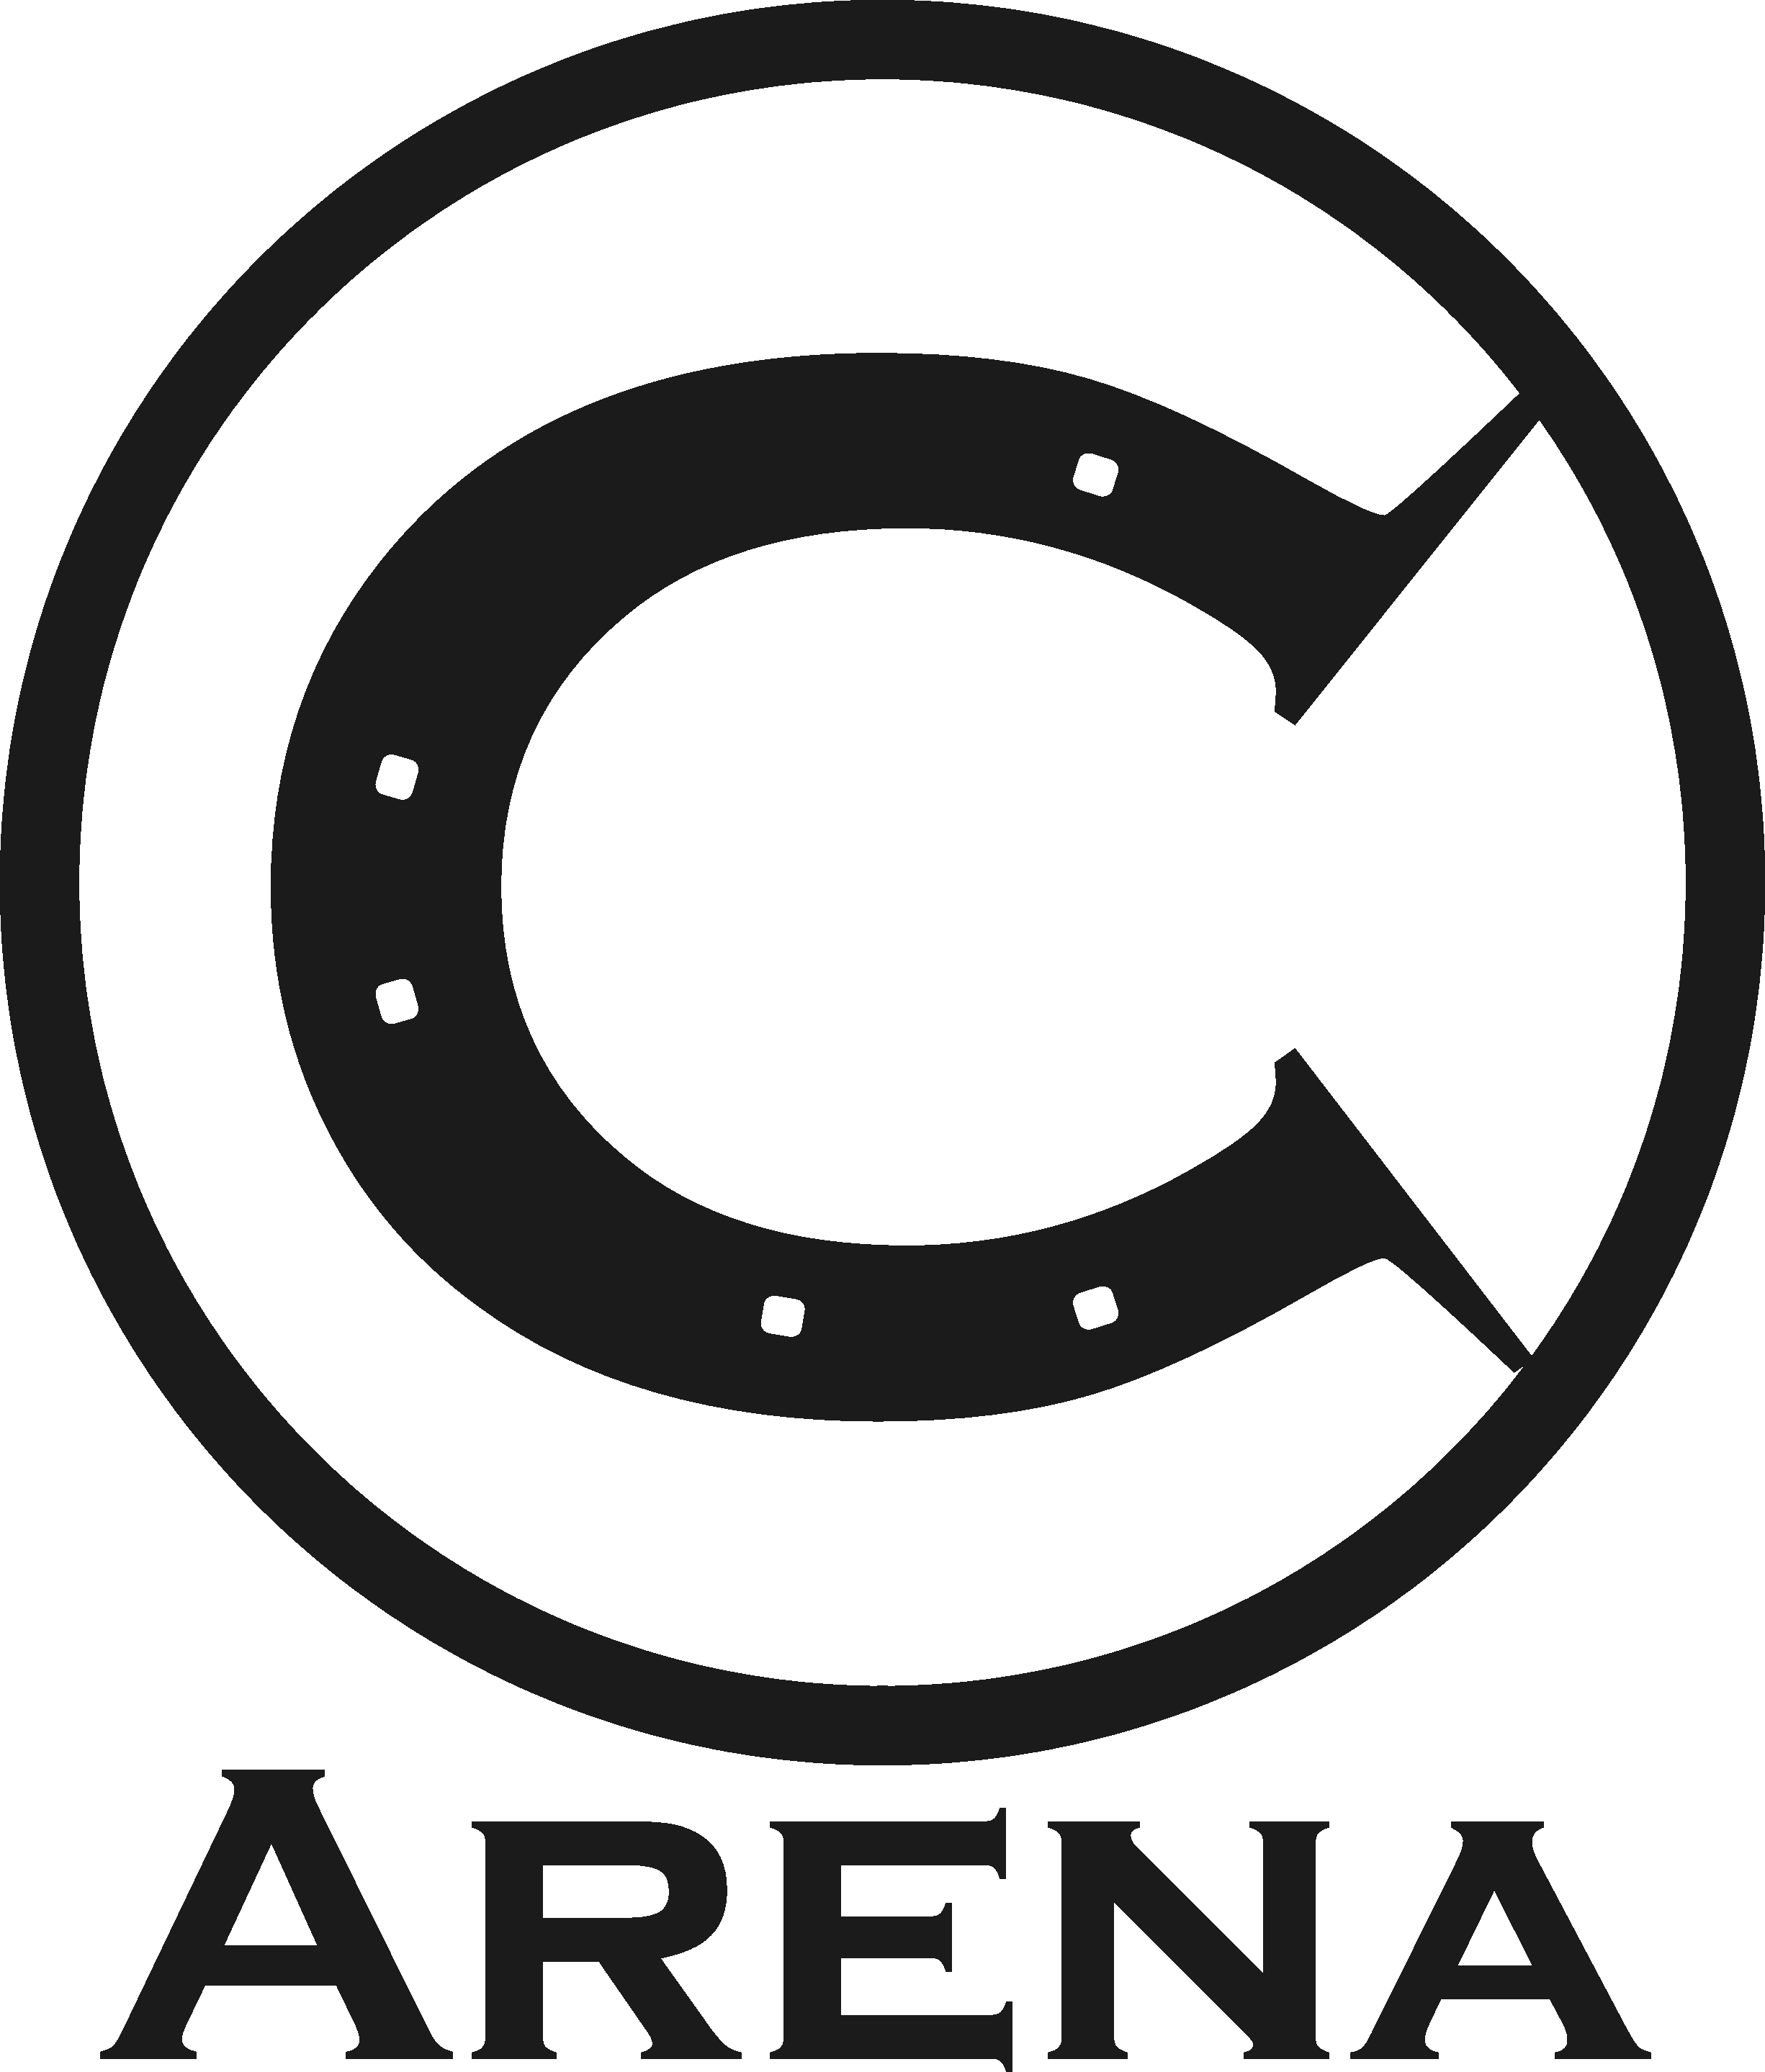 Circle C logo